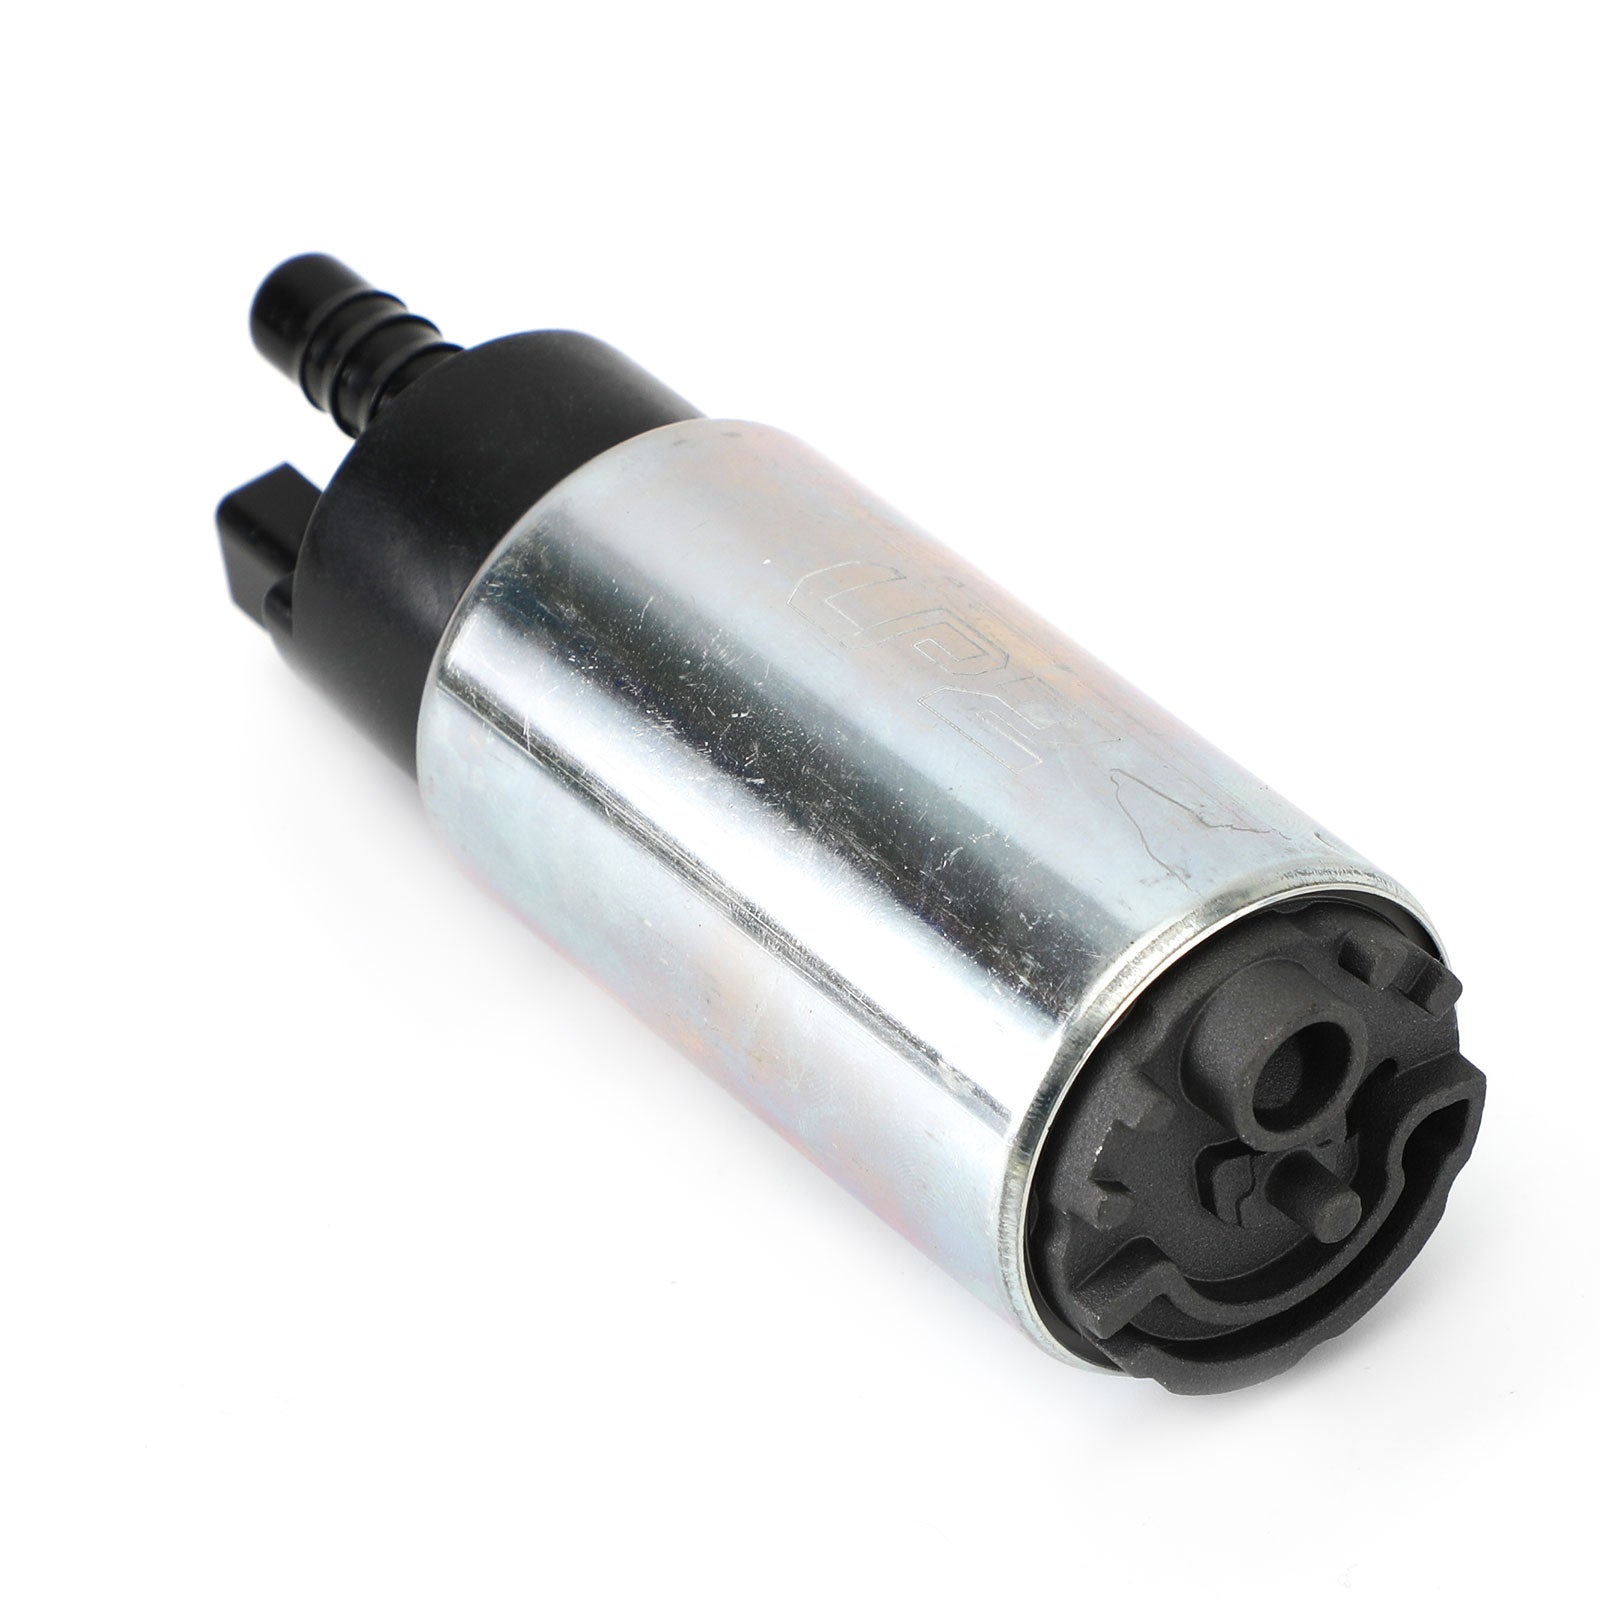 Aprilia SRV 850 2012-2013 Fuel Pump Kit w/ Filter